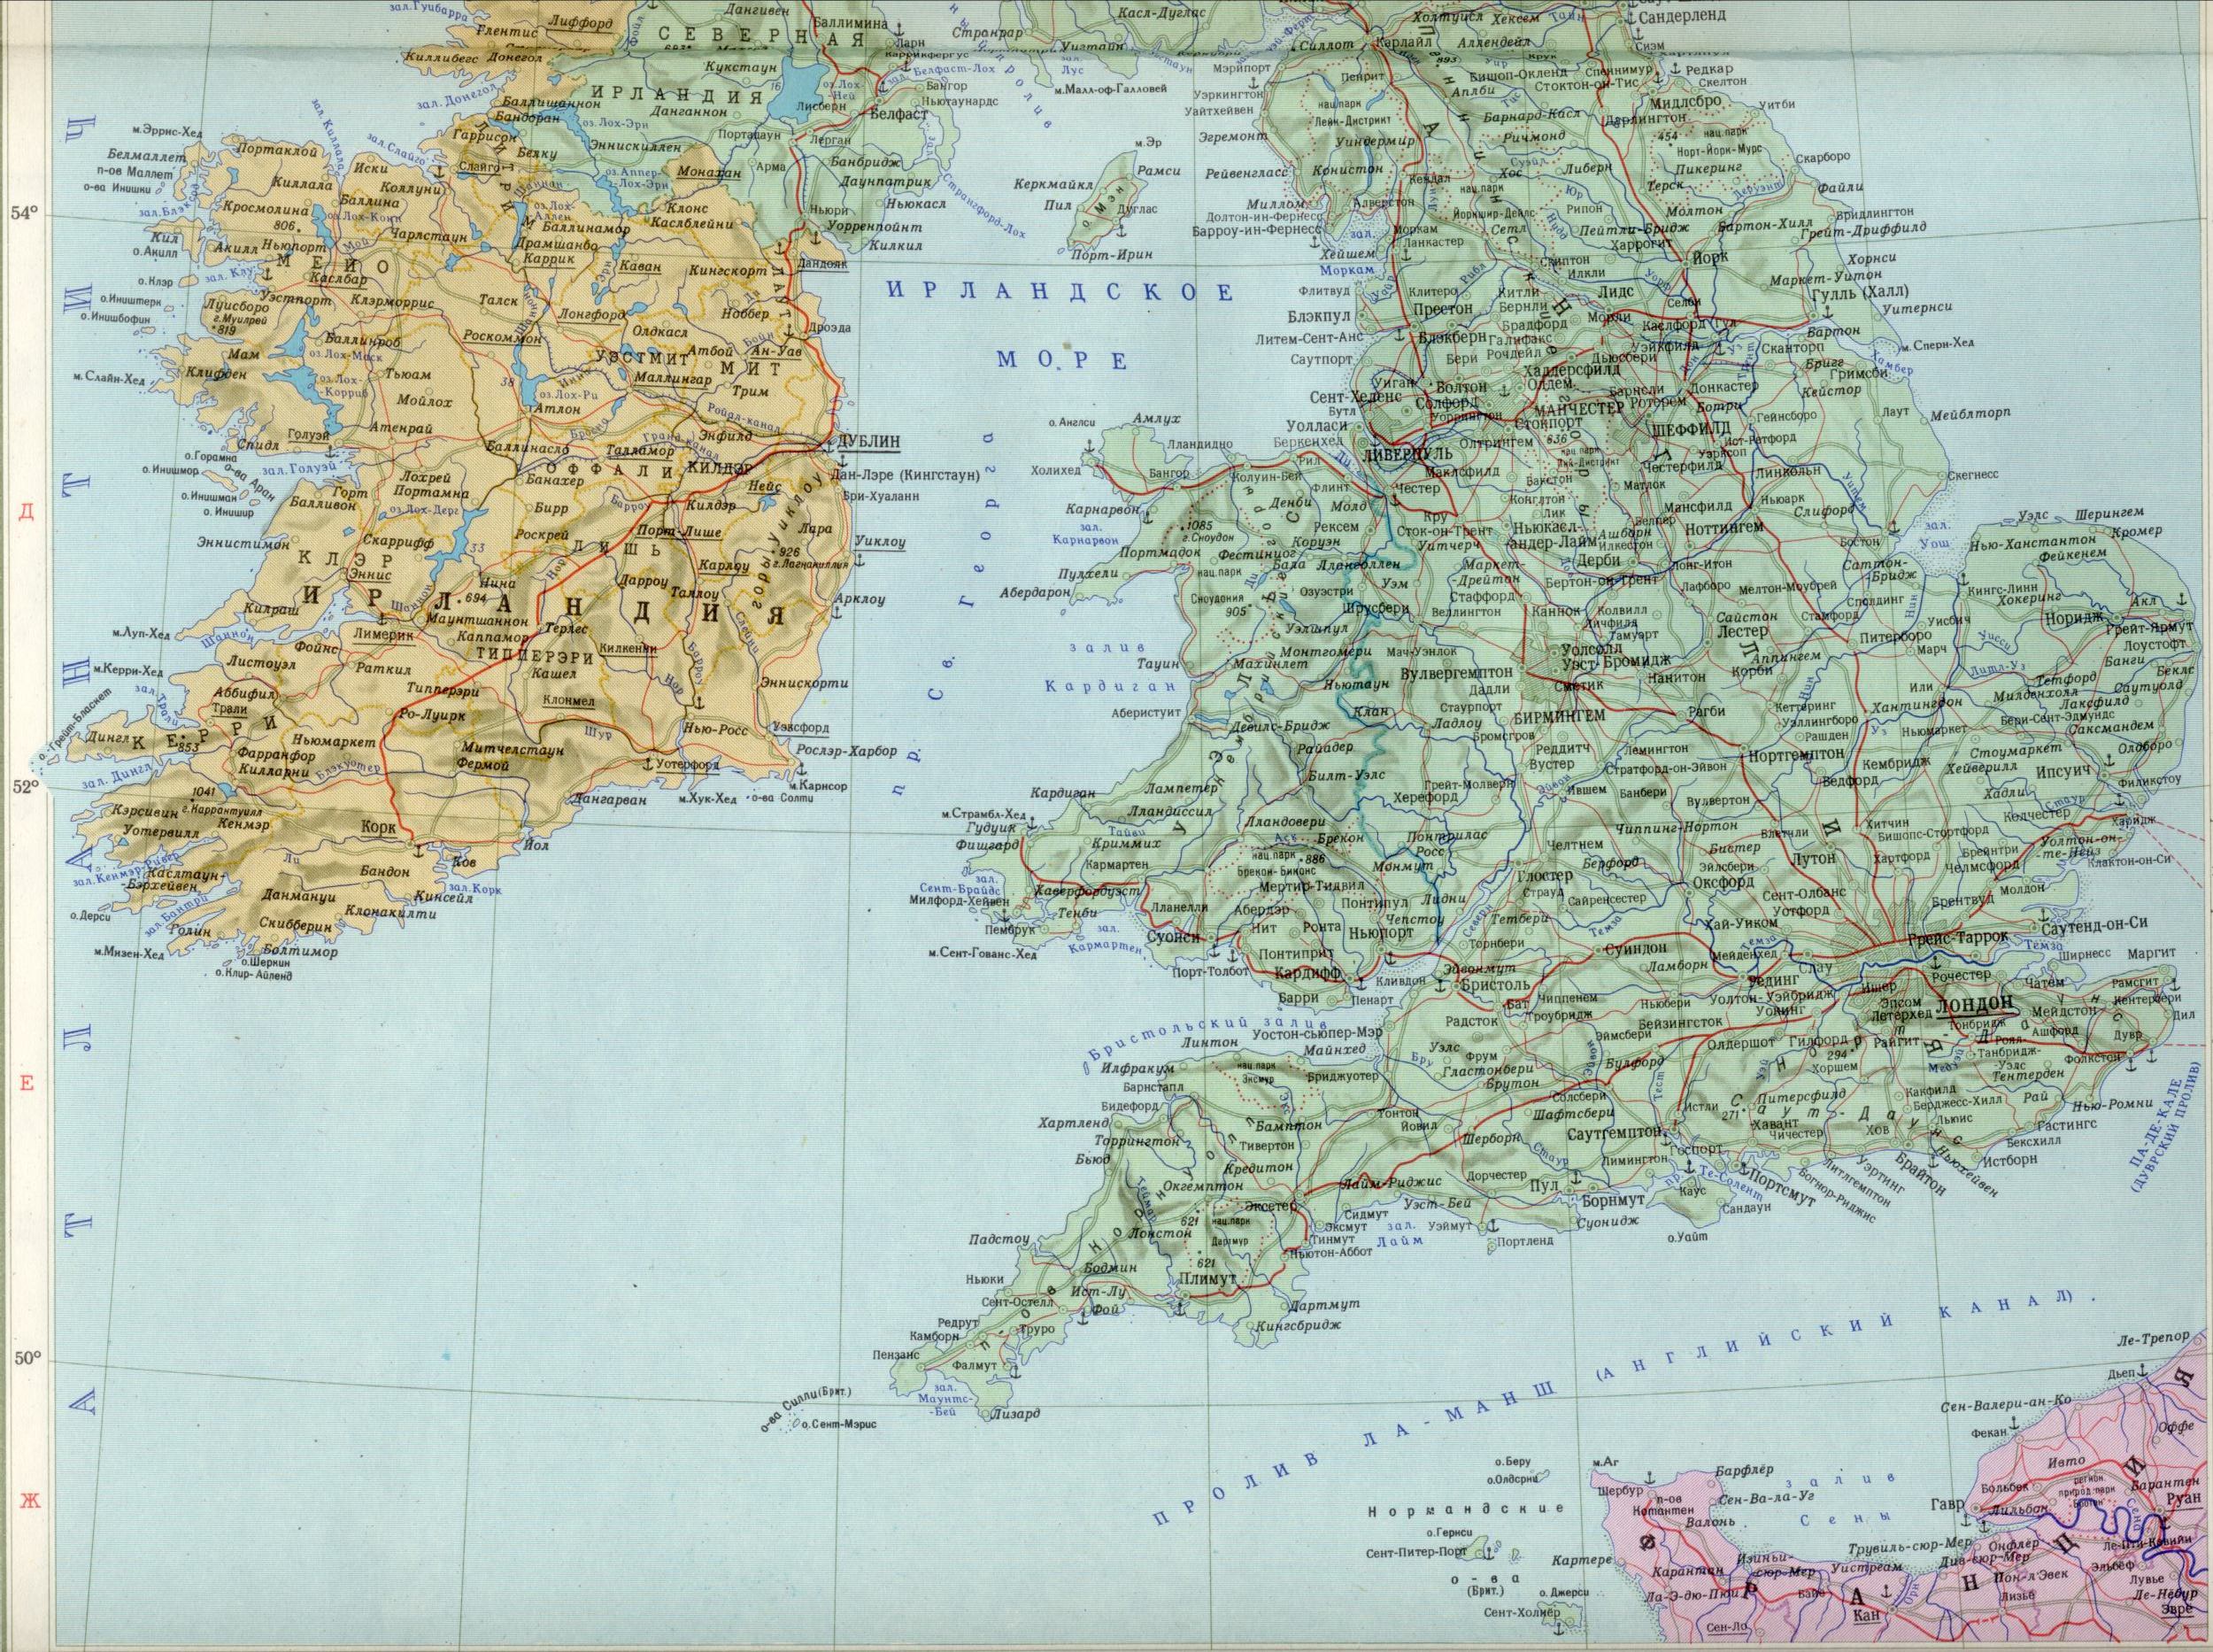 Карта Великобритании 1см=30км. скачать бесплатно политические карты европы, A1